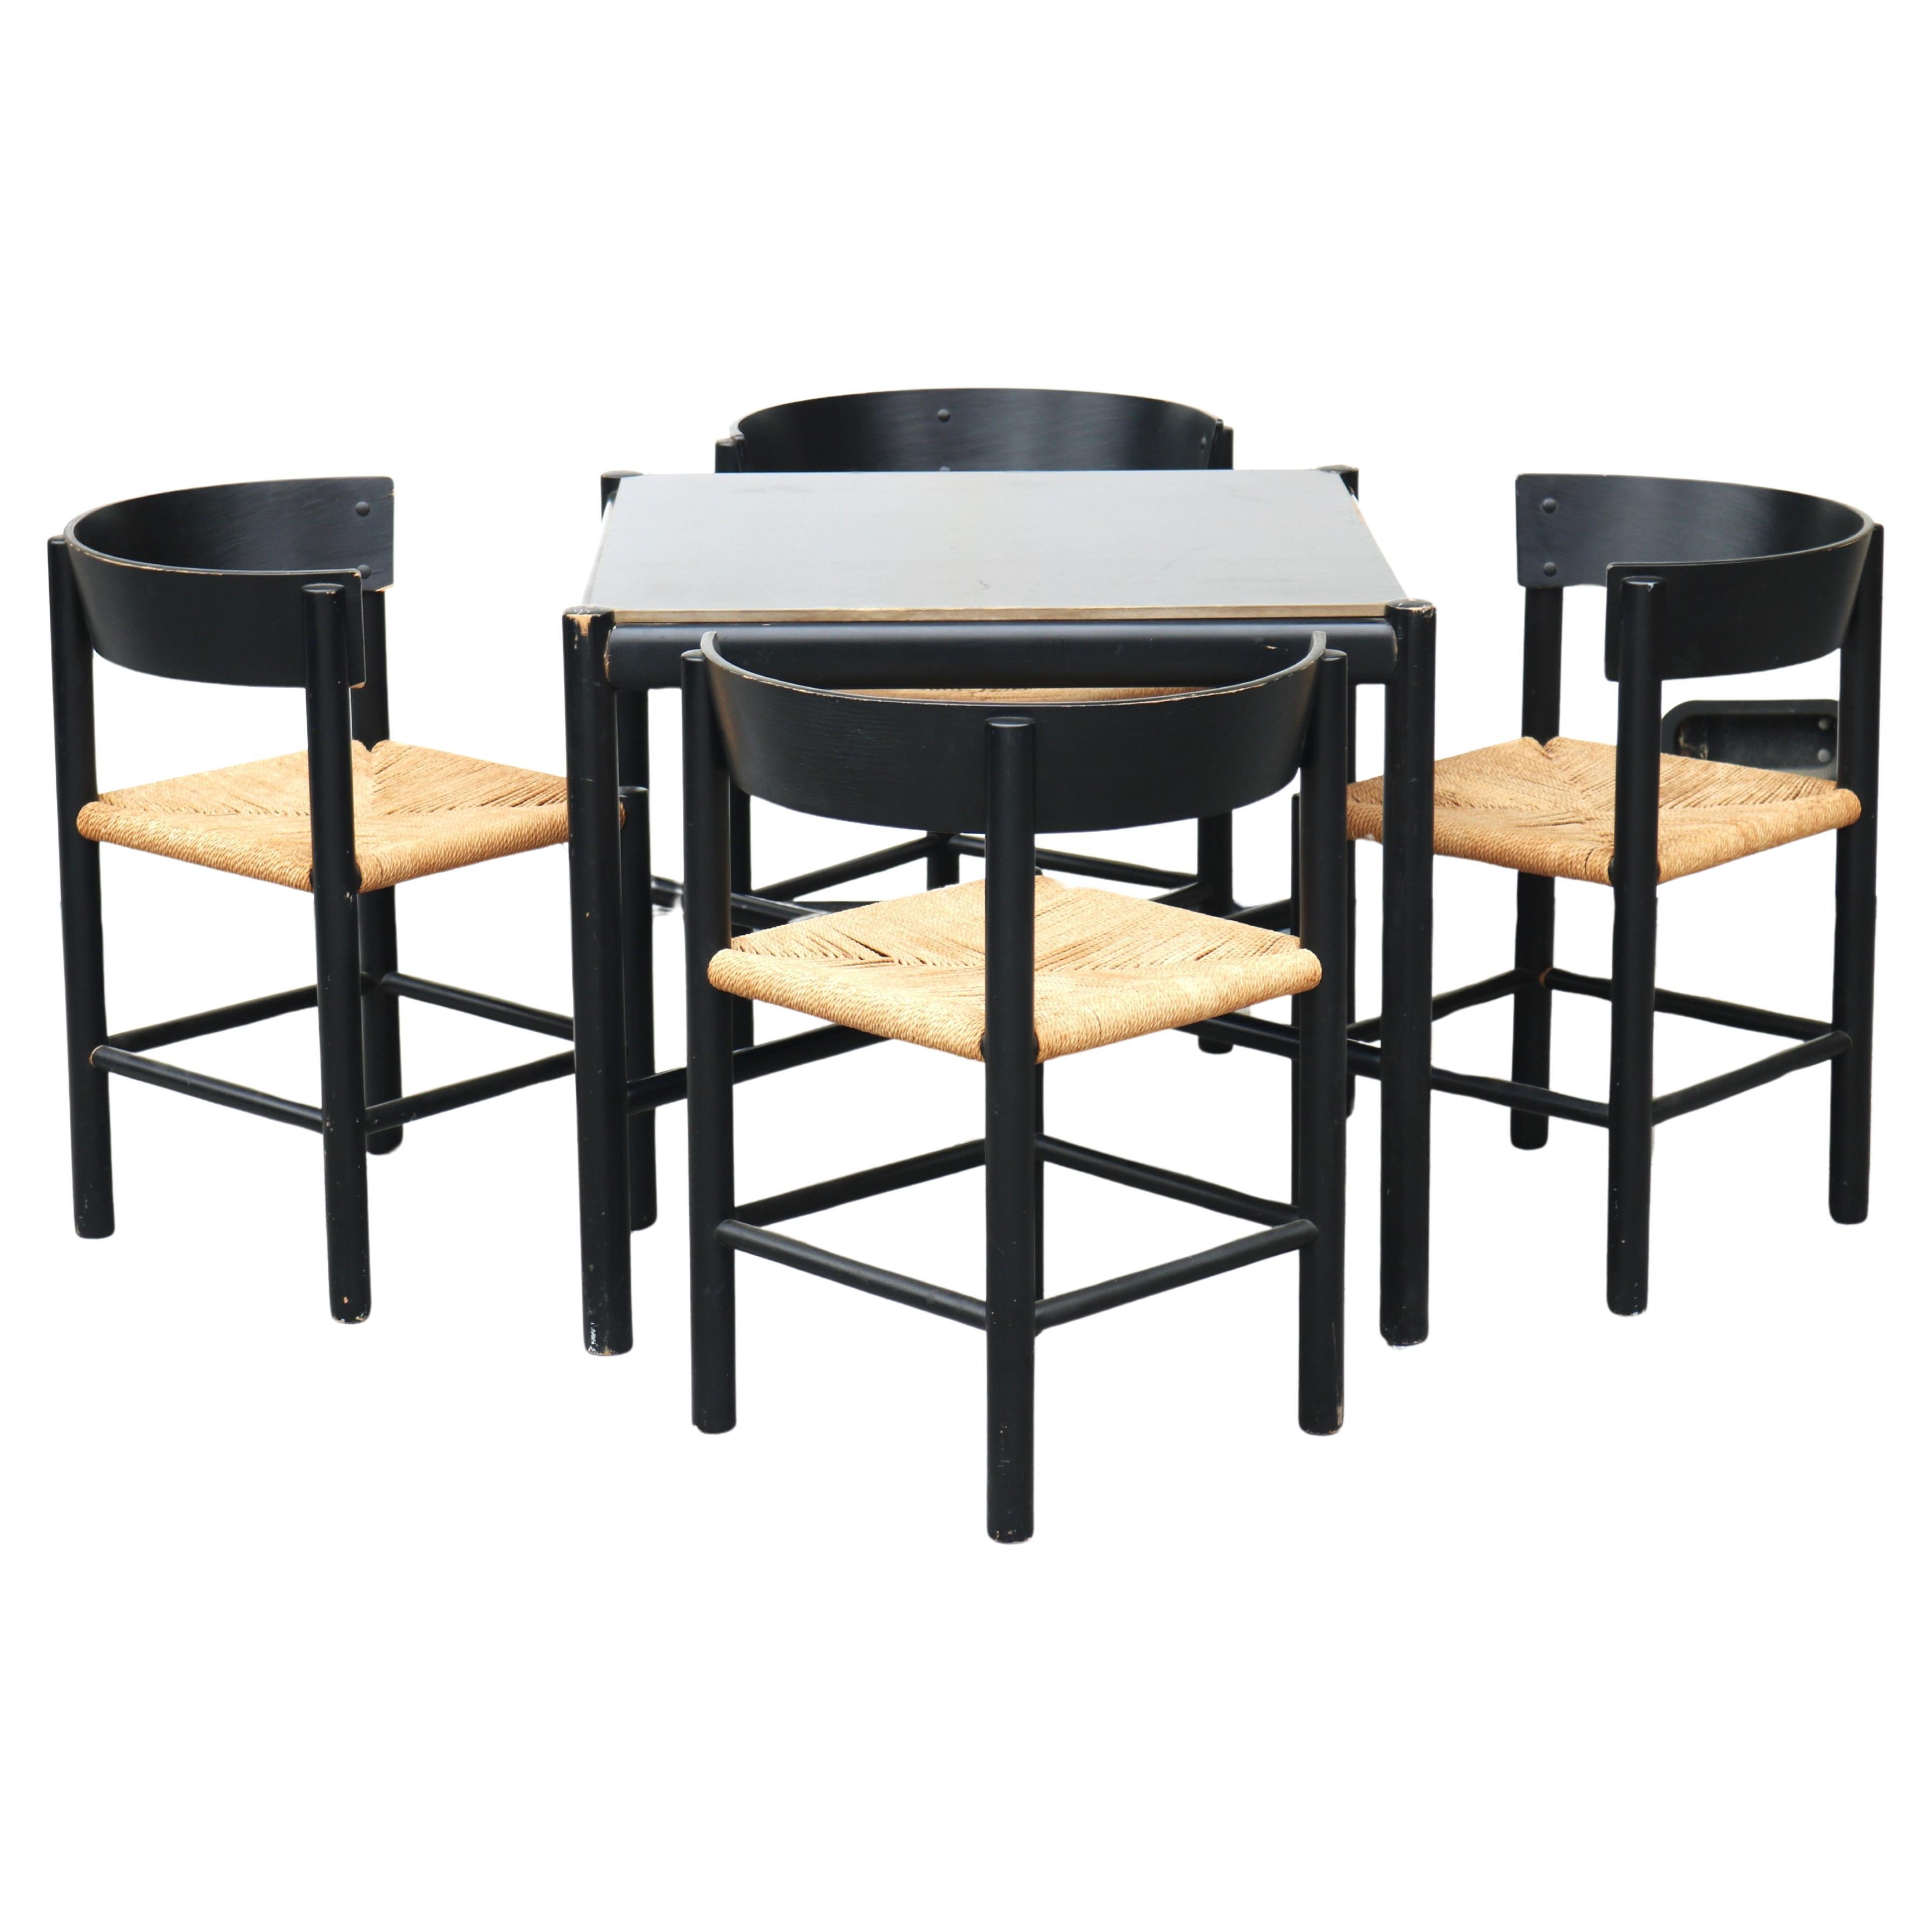 Dining set by Mogens Lassen For Fritz Hansen, Table model 4626-Chair model 4216